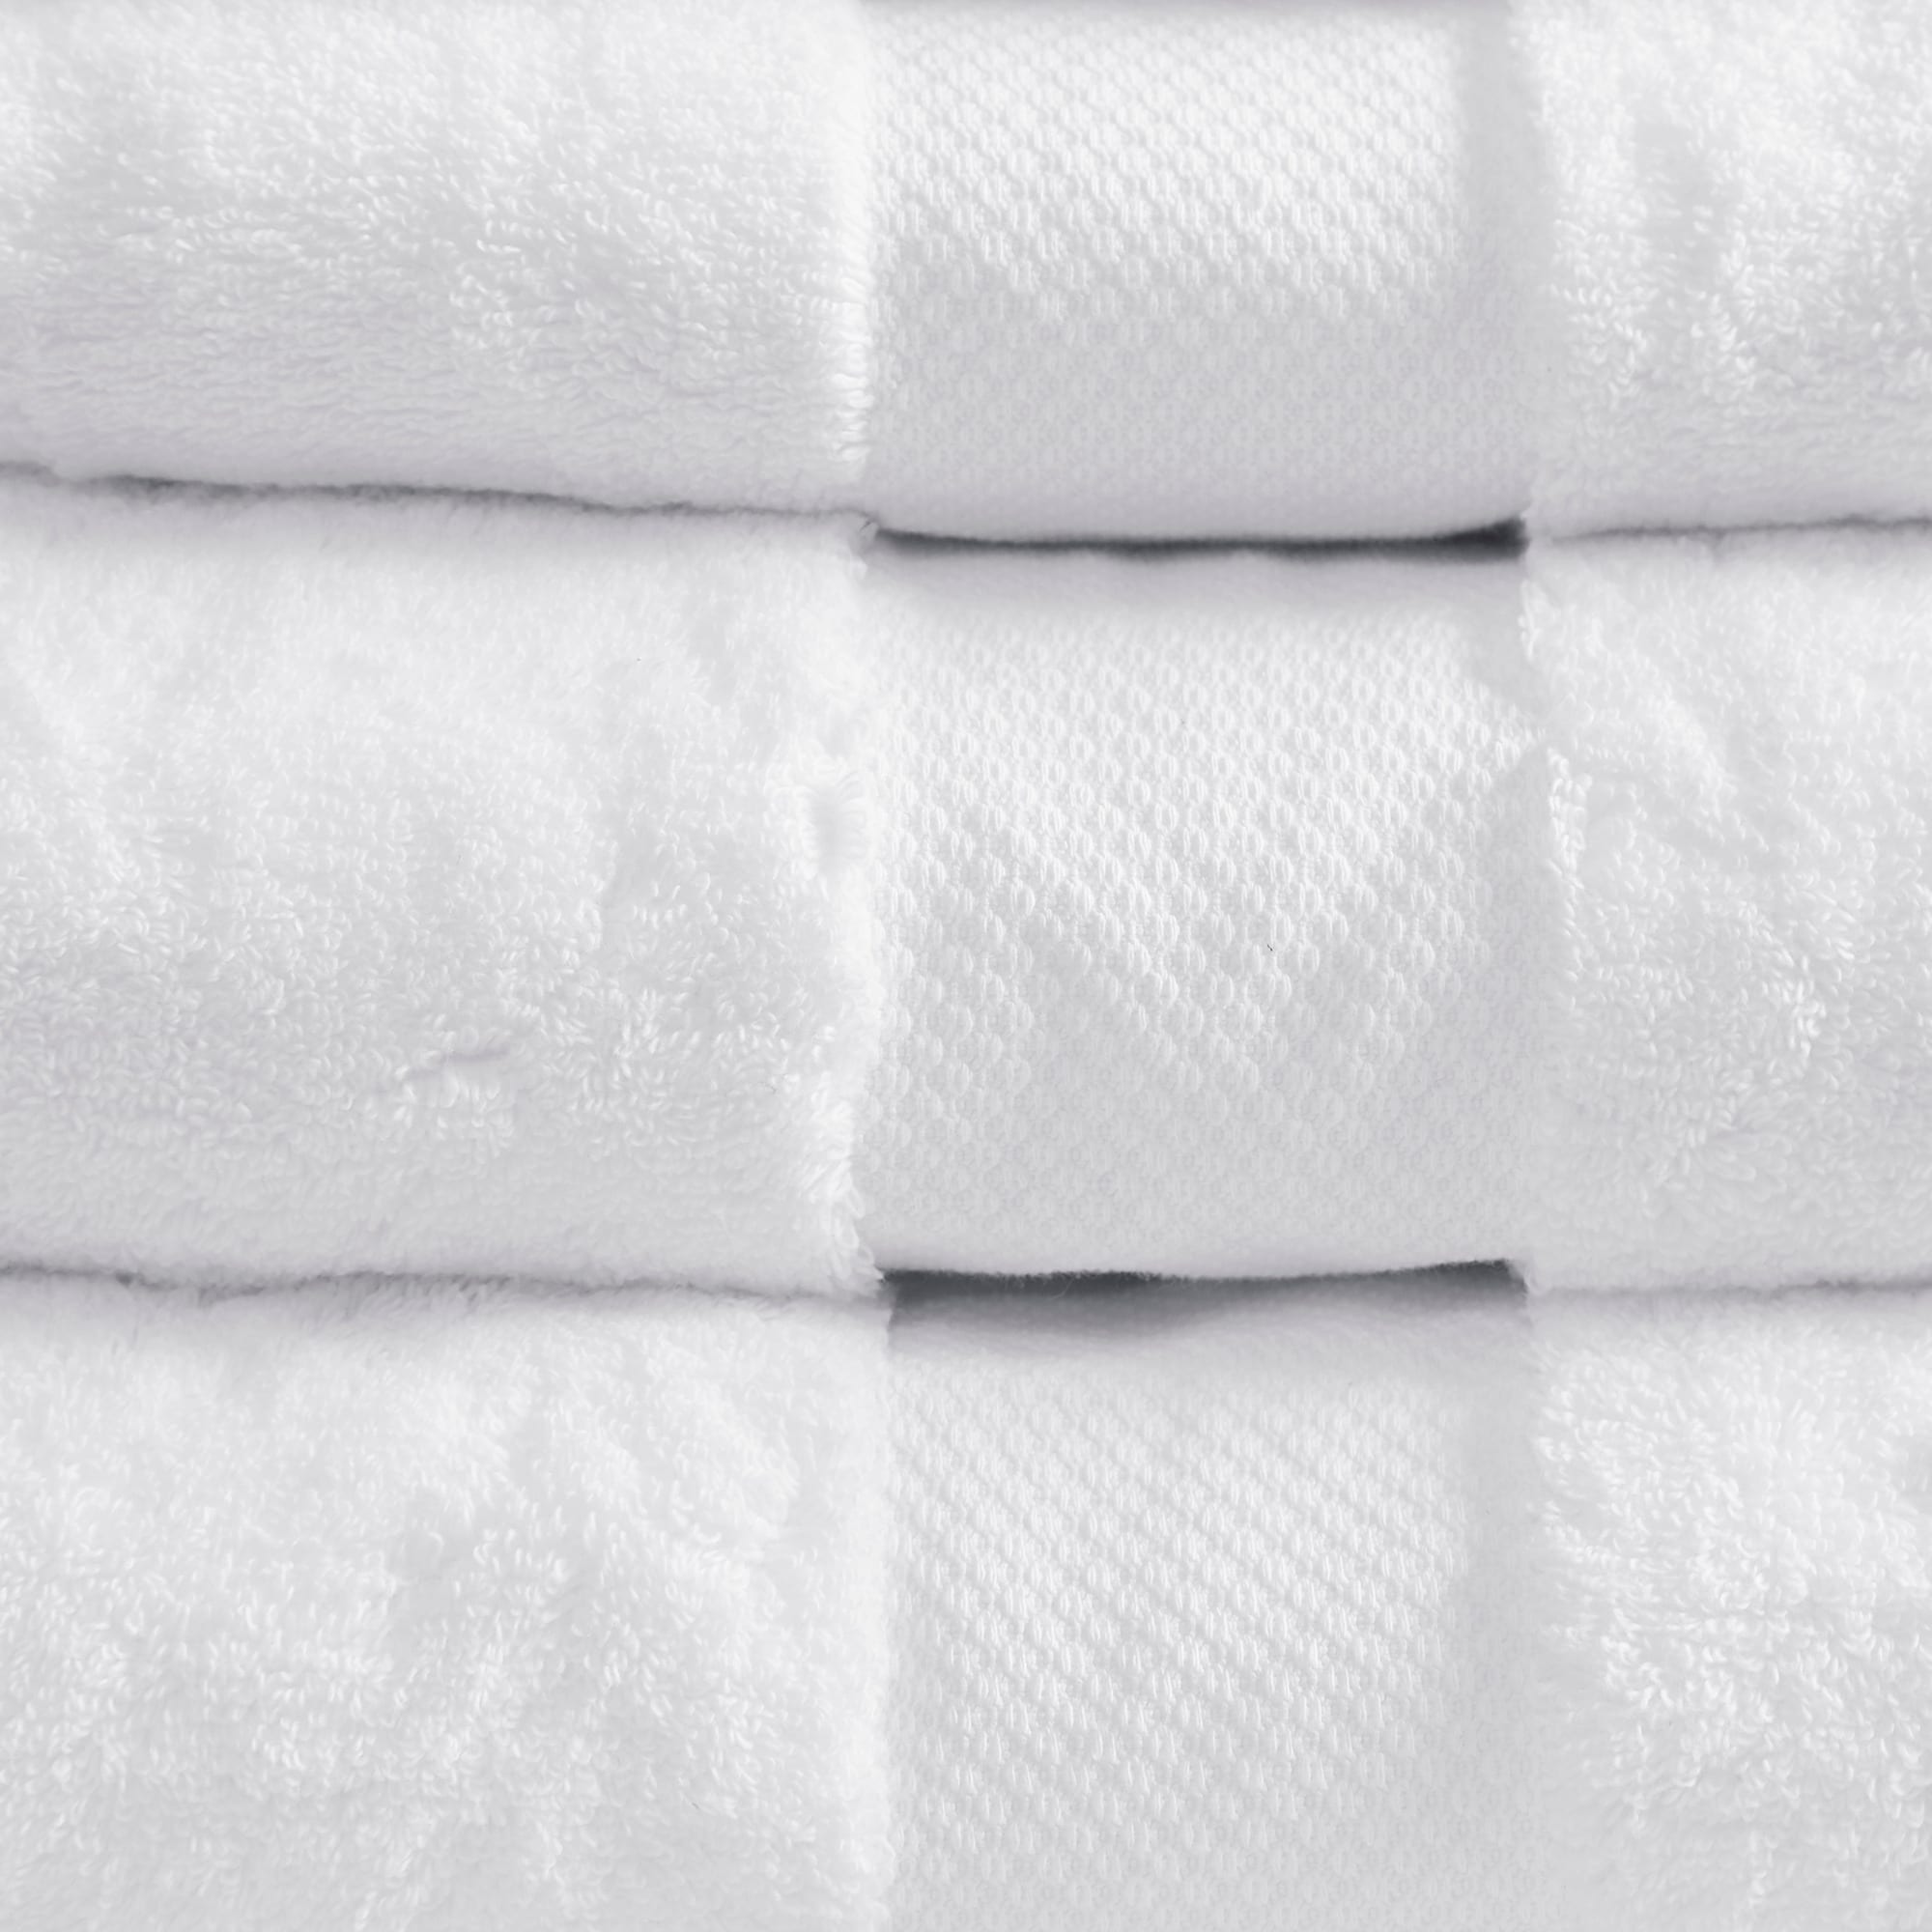 Madison Park Signature Turkish Cotton 6-piece Bath Towel Set - On Sale -  Bed Bath & Beyond - 18127667